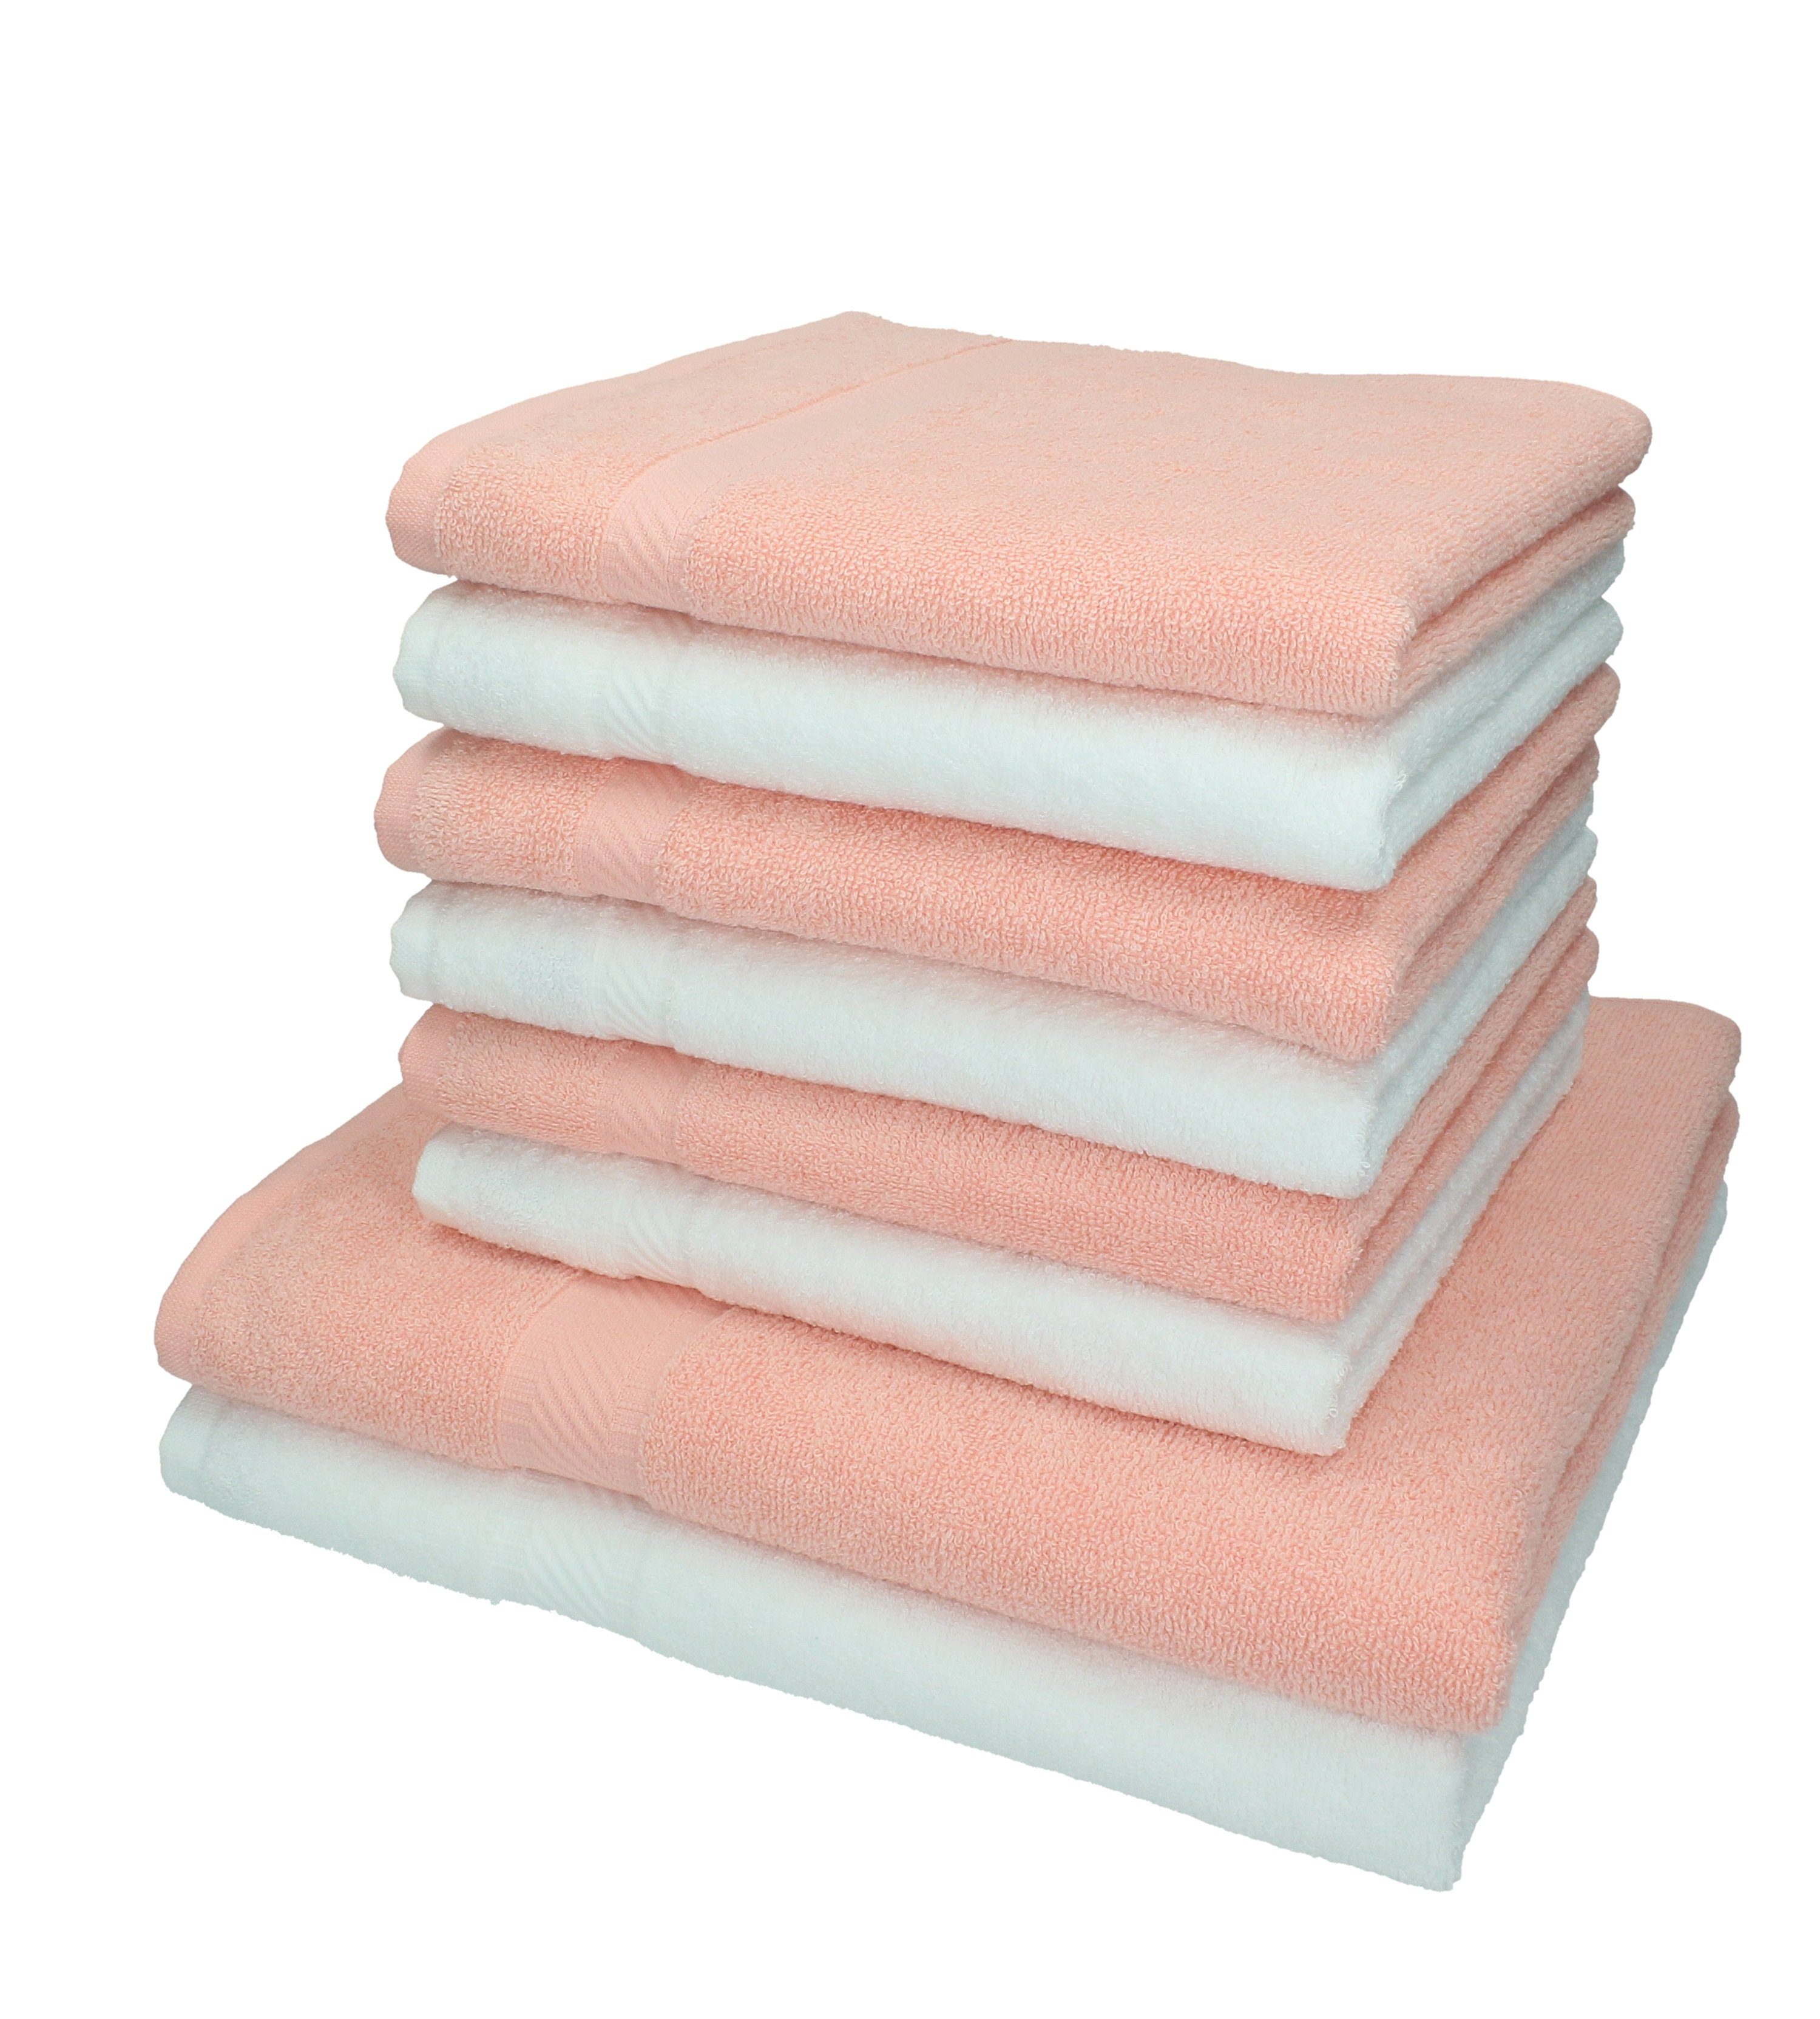 Betz Handtuch Set 8-tlg. Handtuch-Set Palermo Farbe weiß und apricot, 100% Baumwolle